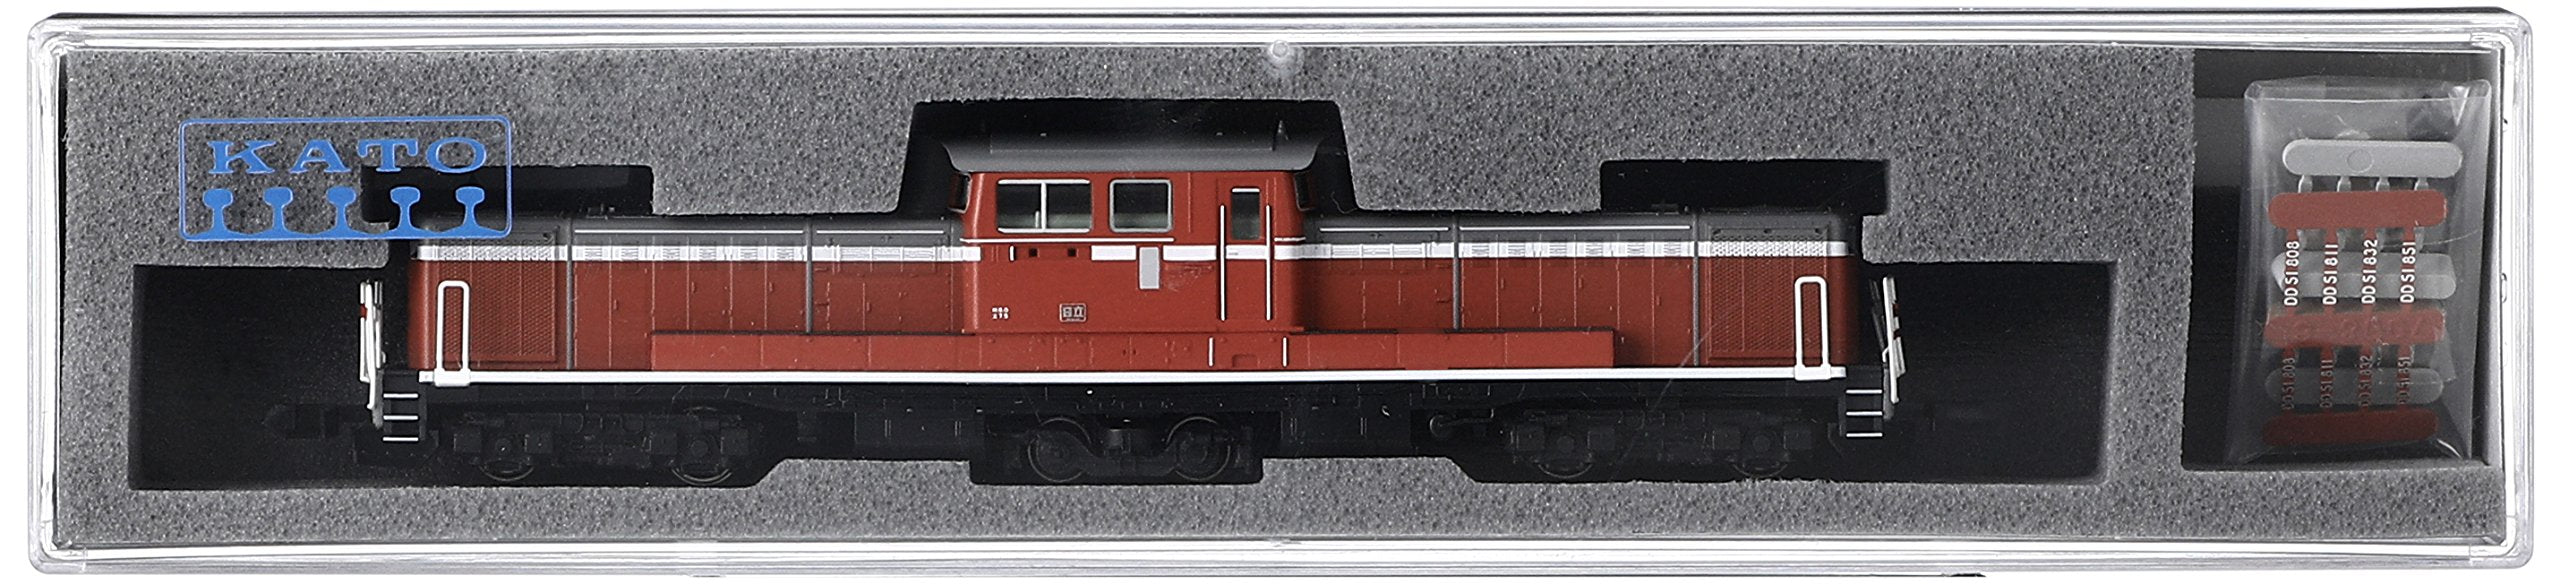 Kato N Gauge Diesel Locomotive: 800 Series 7008-6 Model Railway by Kato